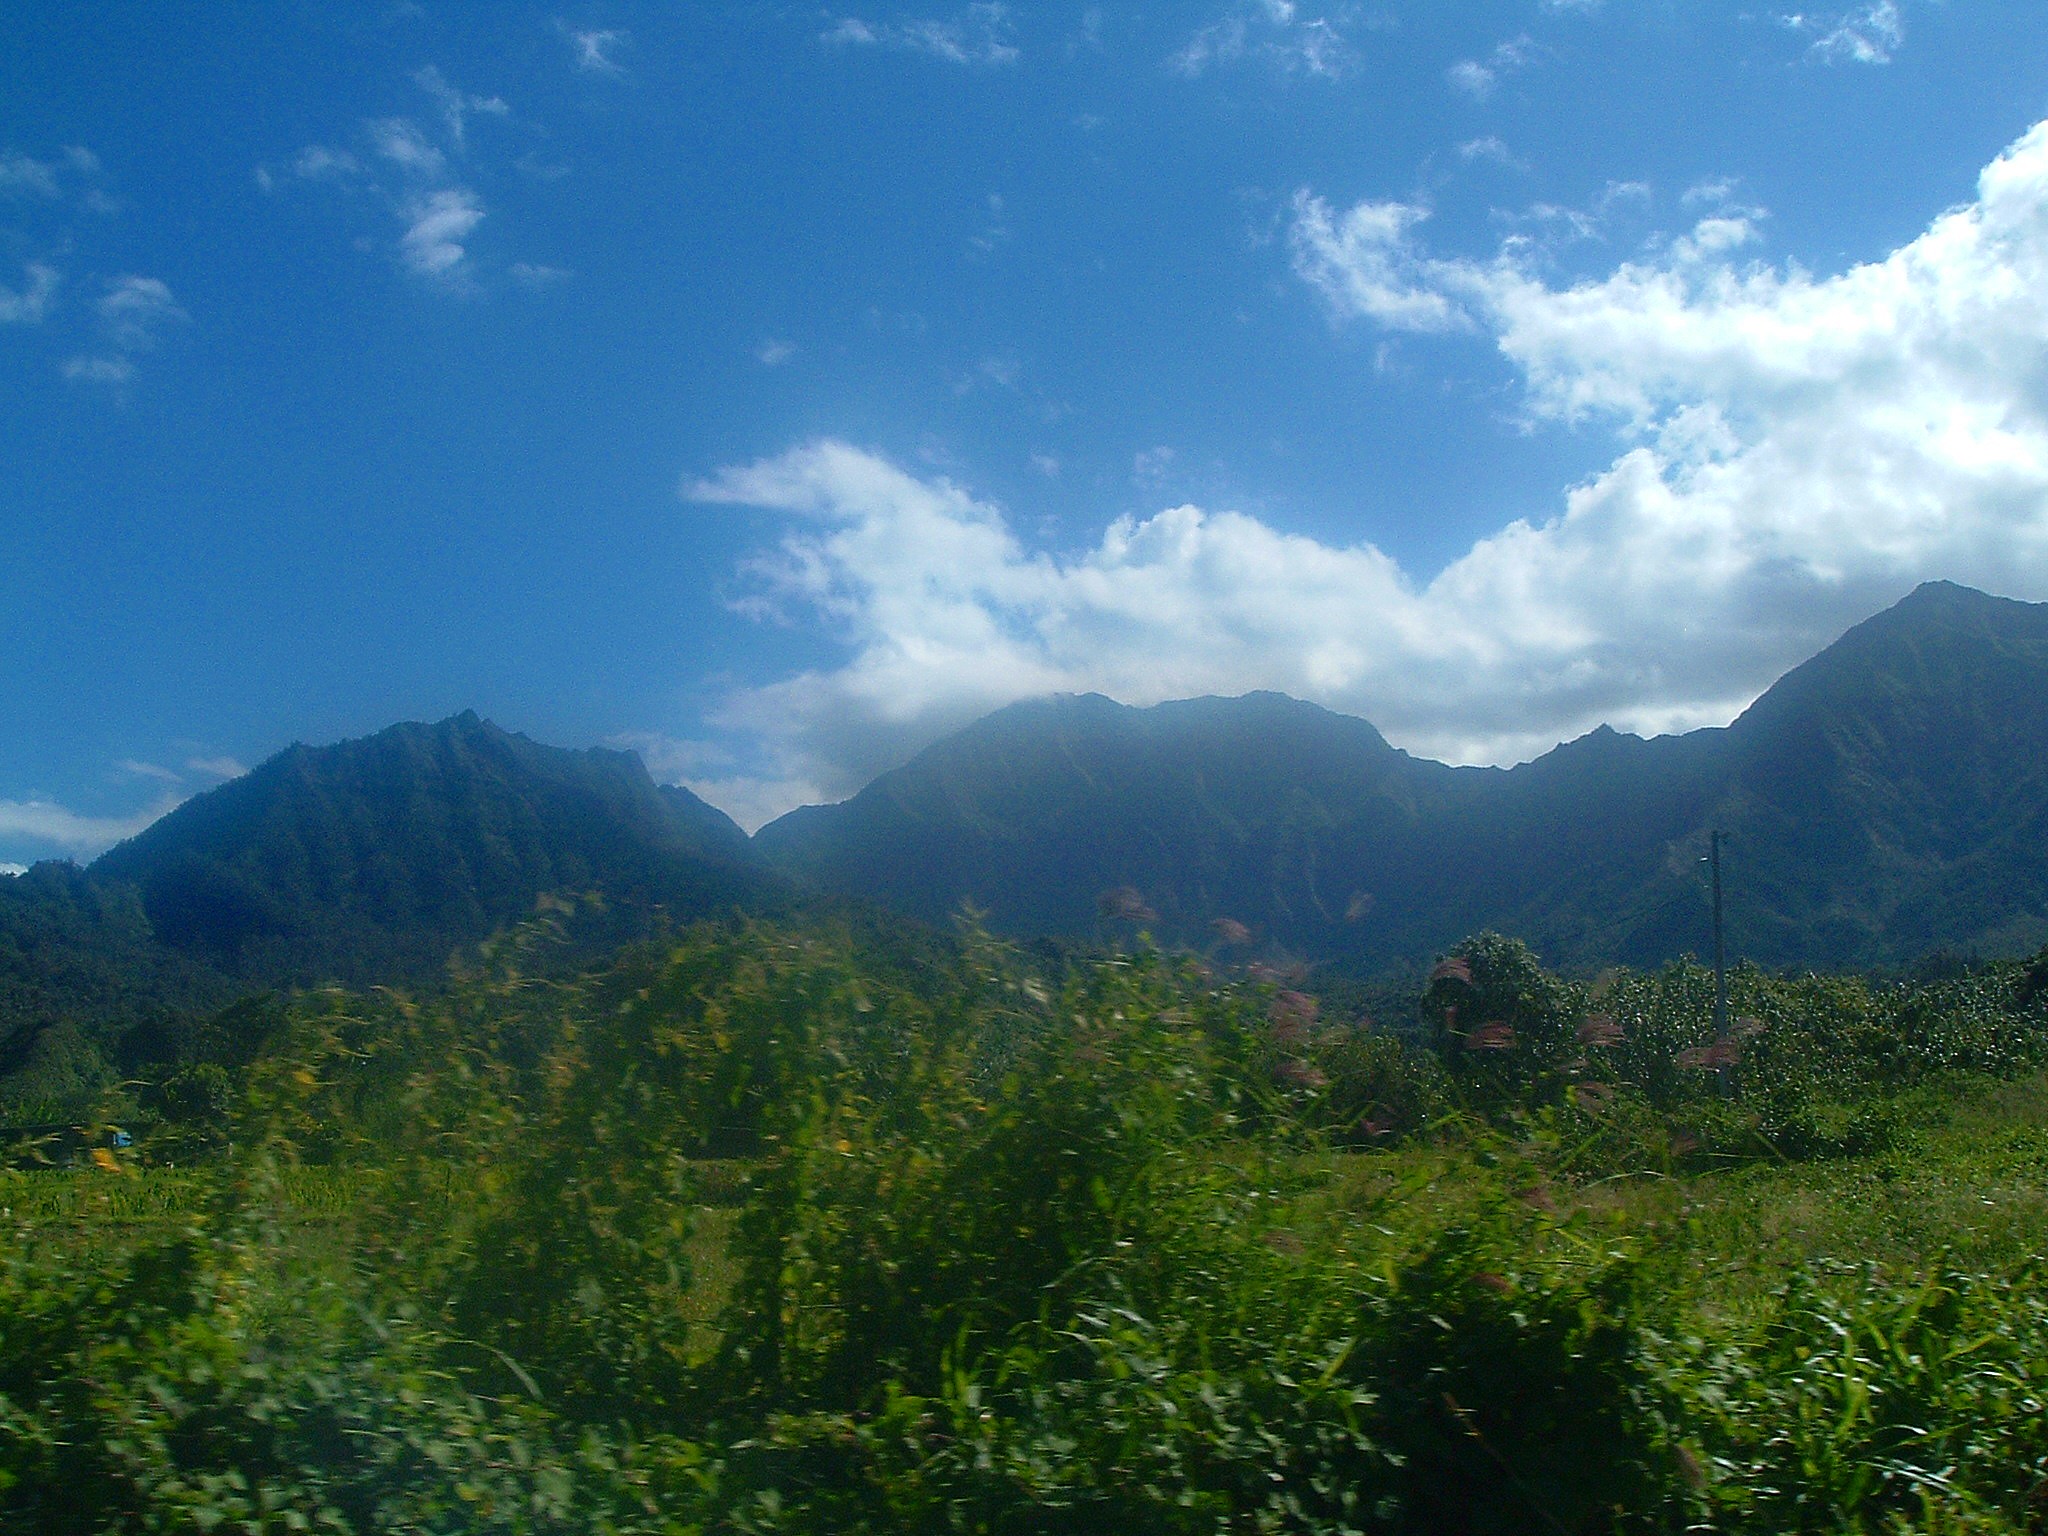 kauai scenery.JPG